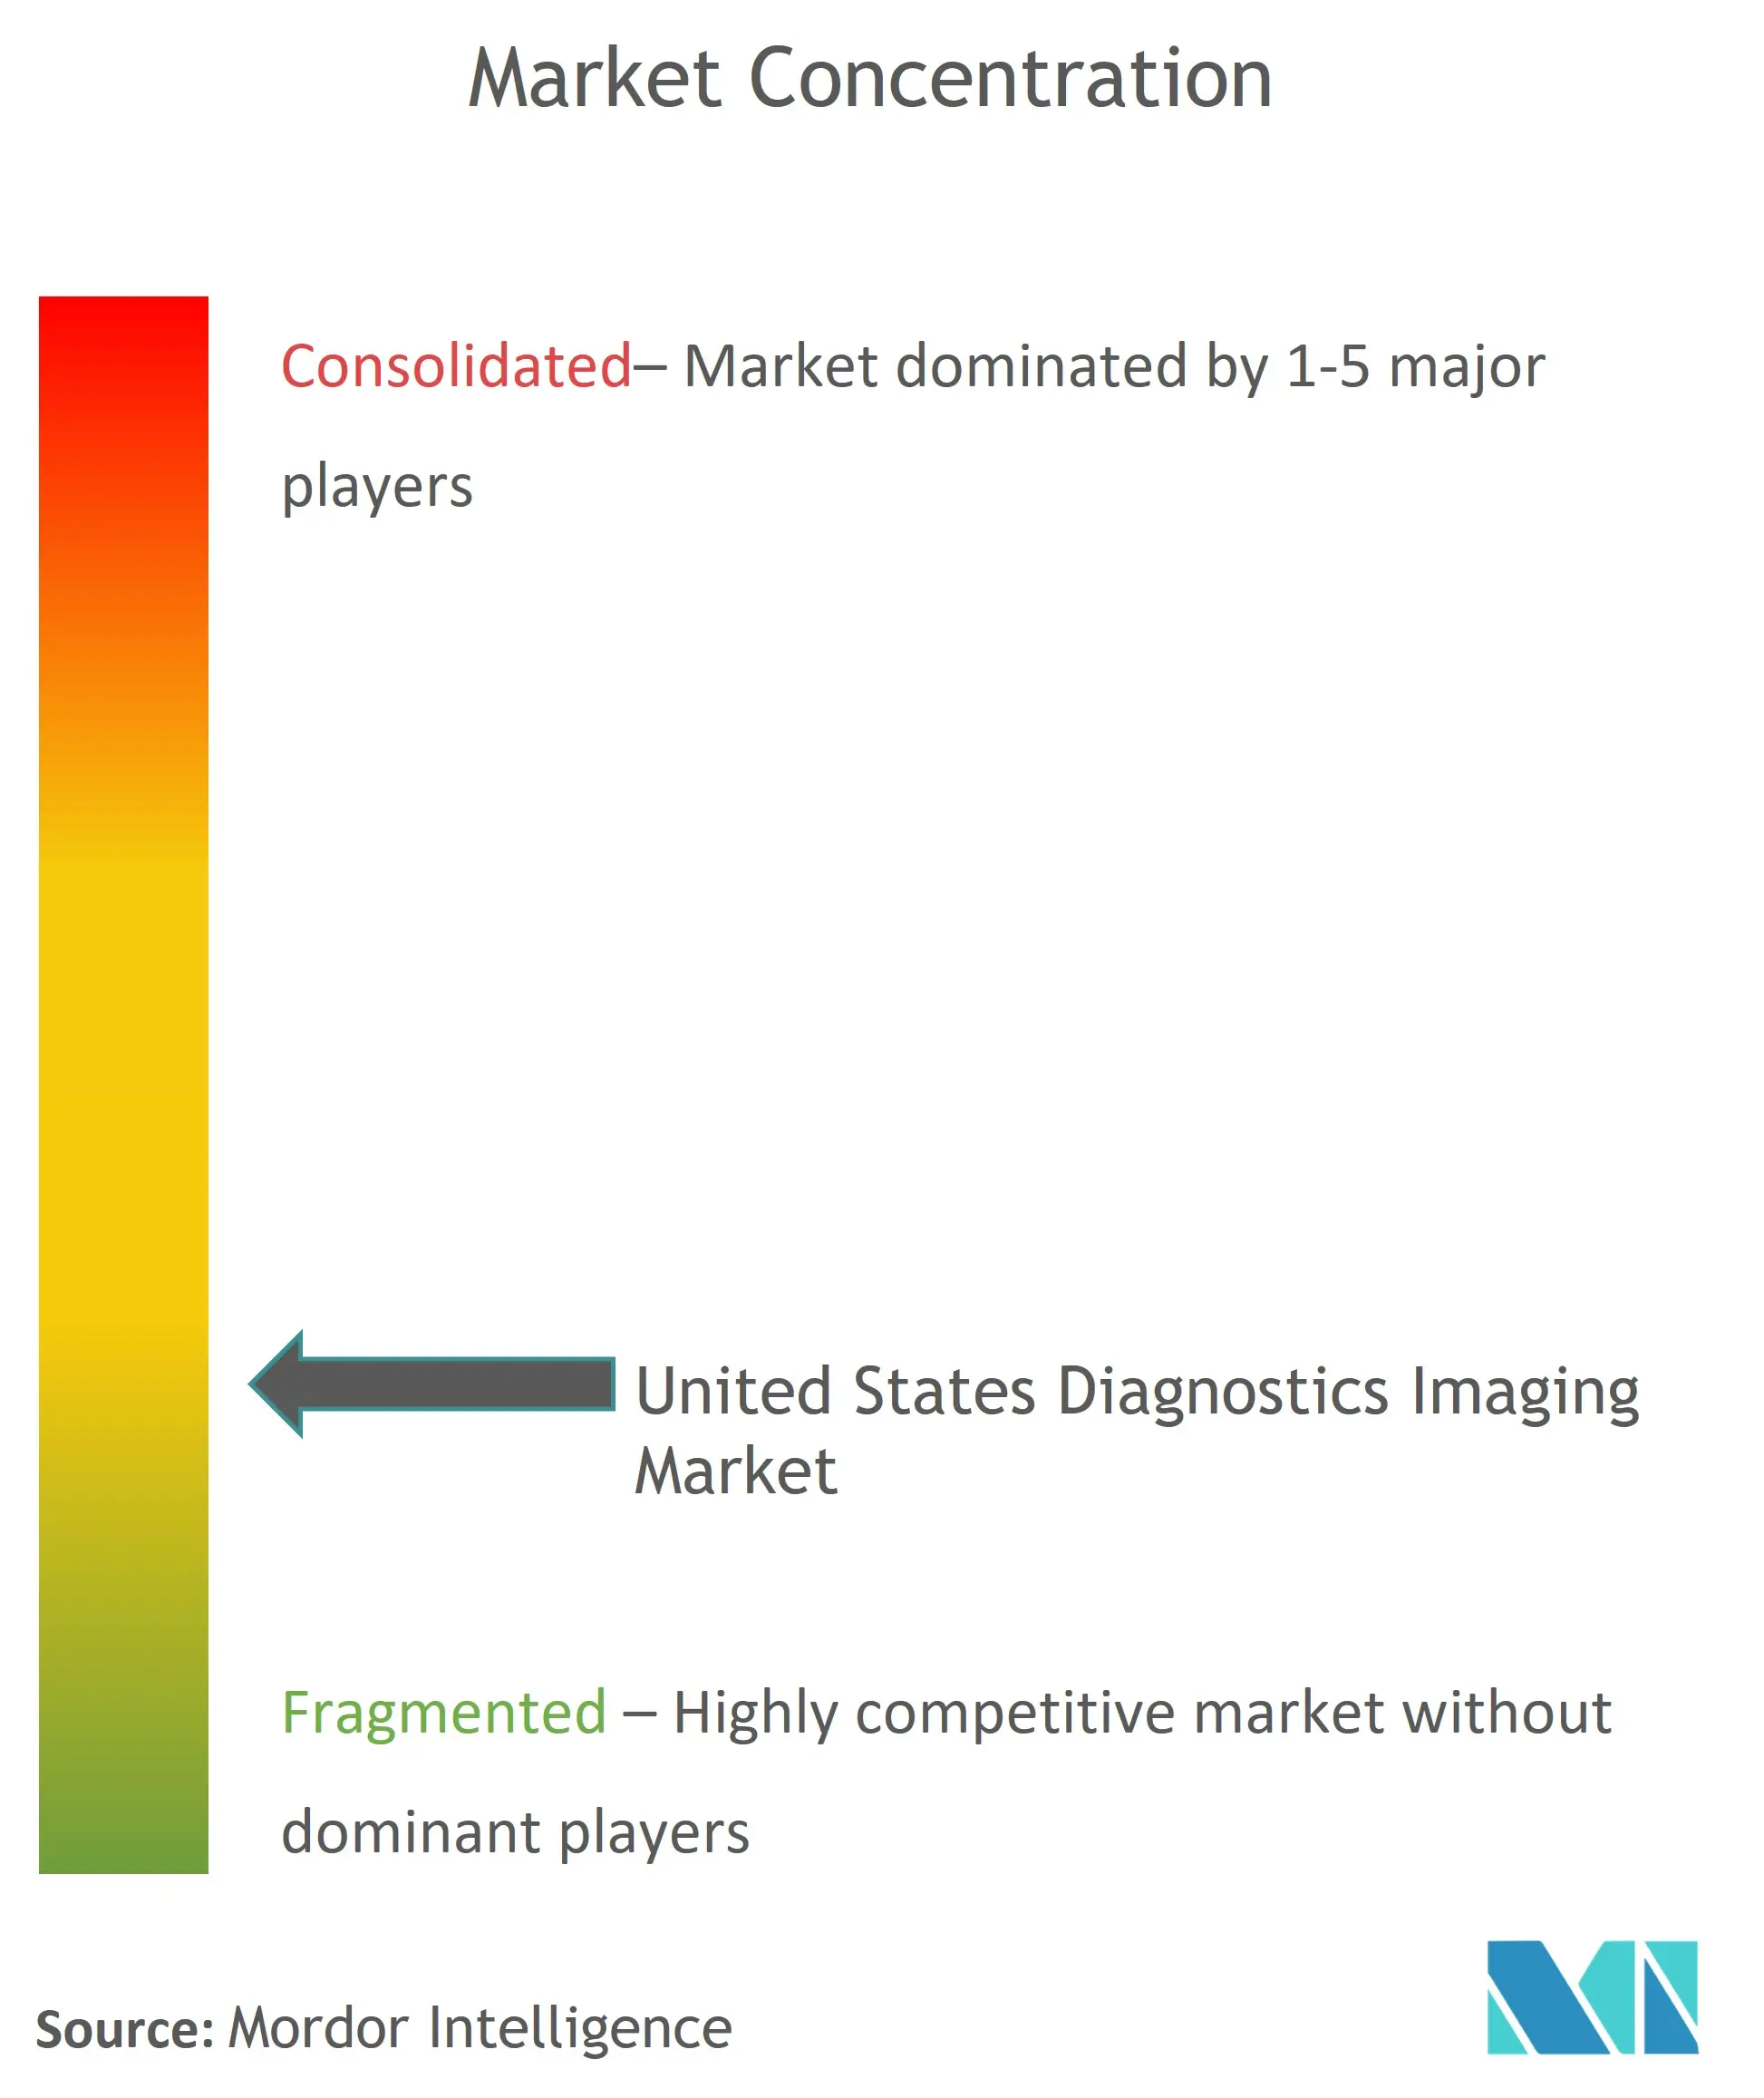 Imagerie diagnostique aux États-UnisConcentration du marché